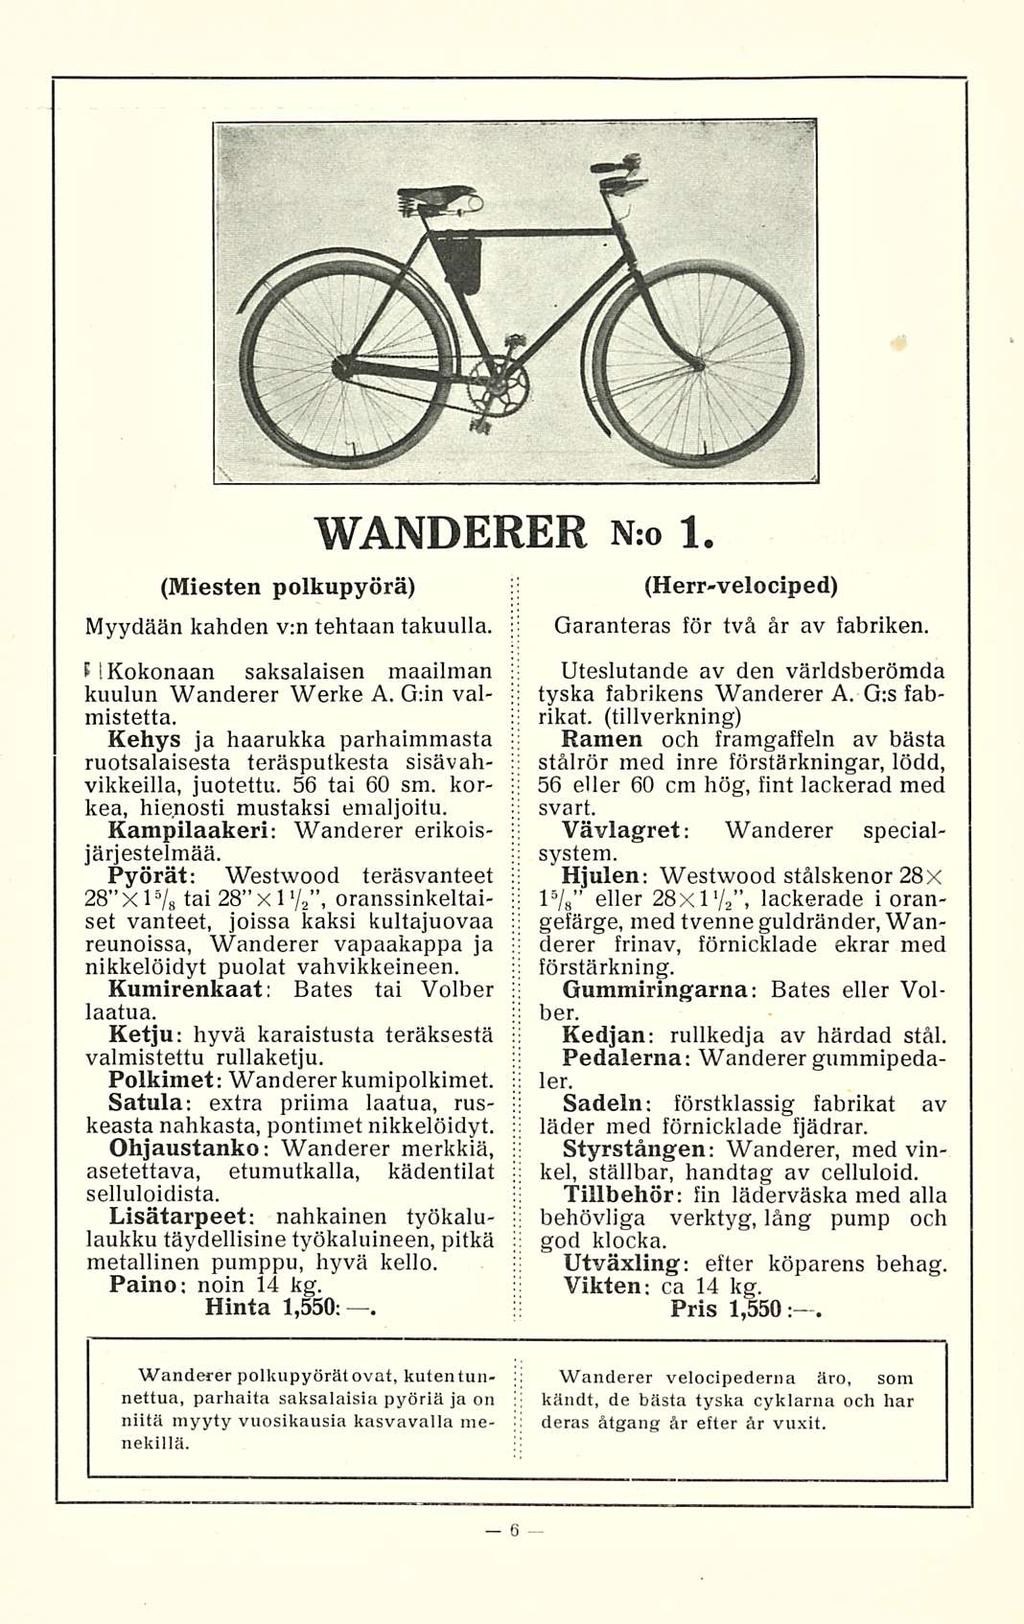 (Miesten polkupyörä) Myydään kahden v:n tehtaan takuulla. t [Kokonaan saksalaisen maailman kuulun Wanderer Werke A. G:in valmistetta.